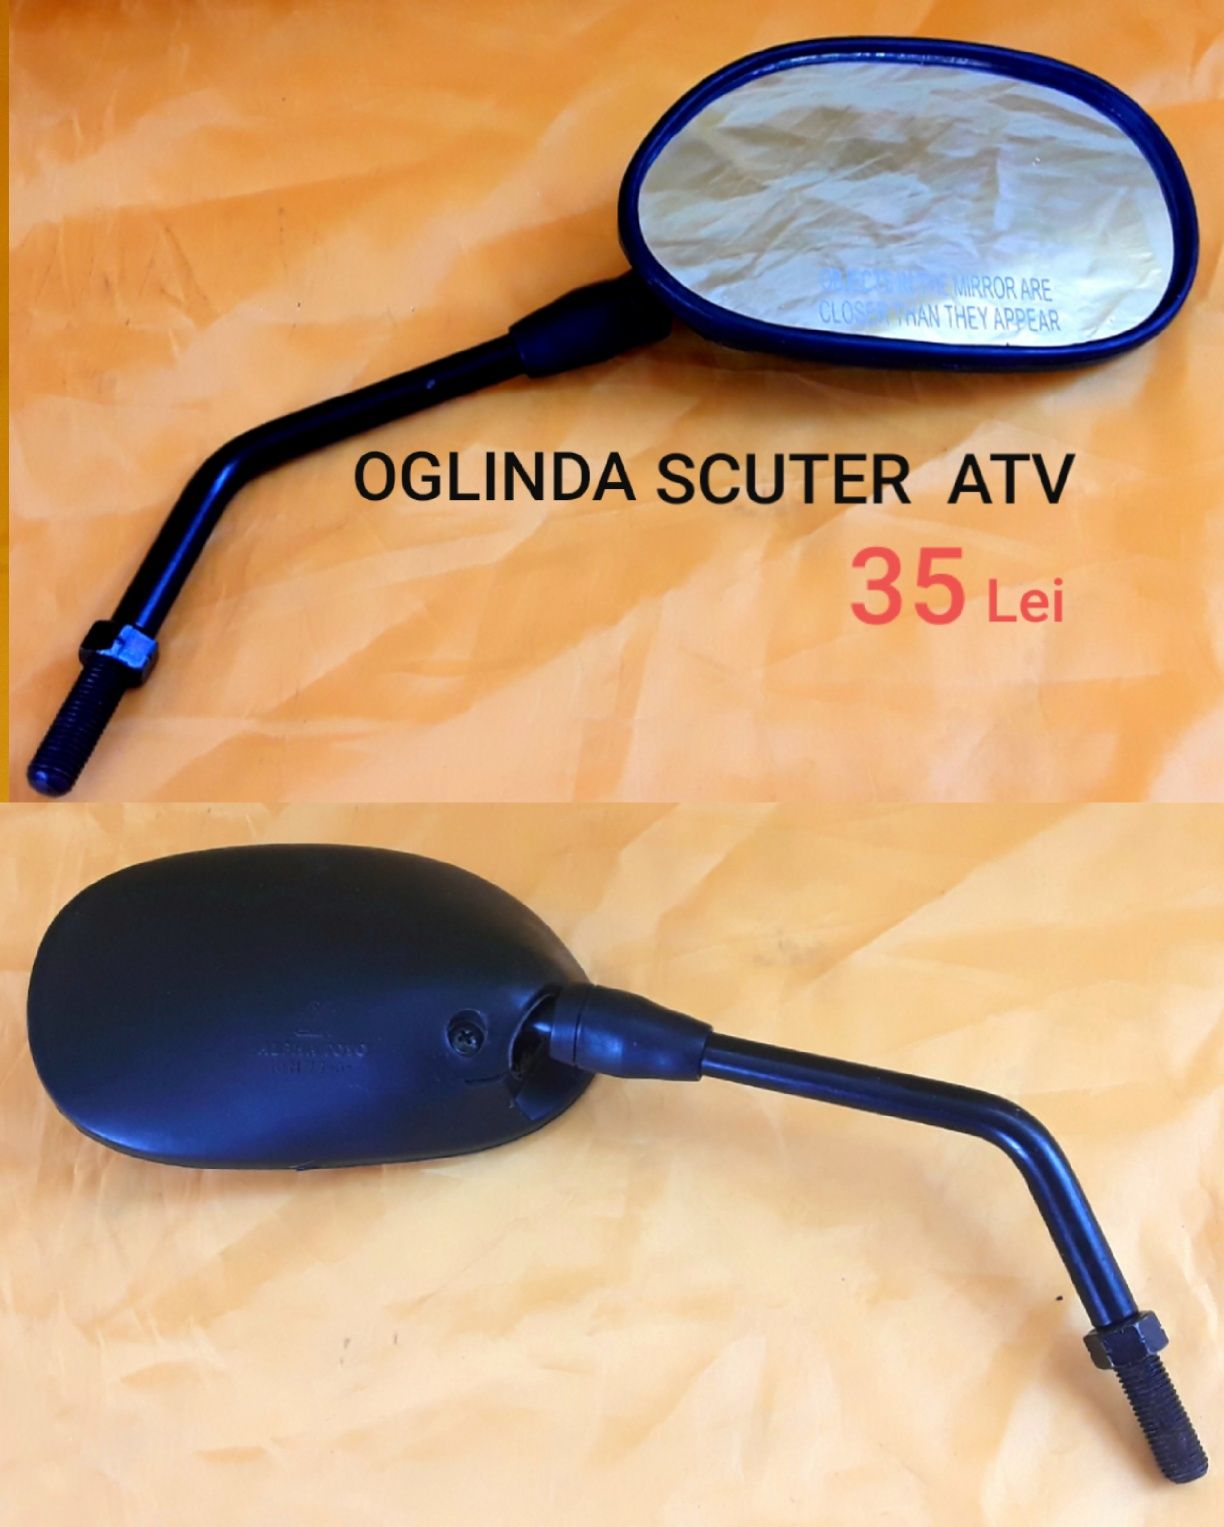 Oglinzi cu suport metal  pentru Scuter, ATV - NOI - 40 Lei Bucata